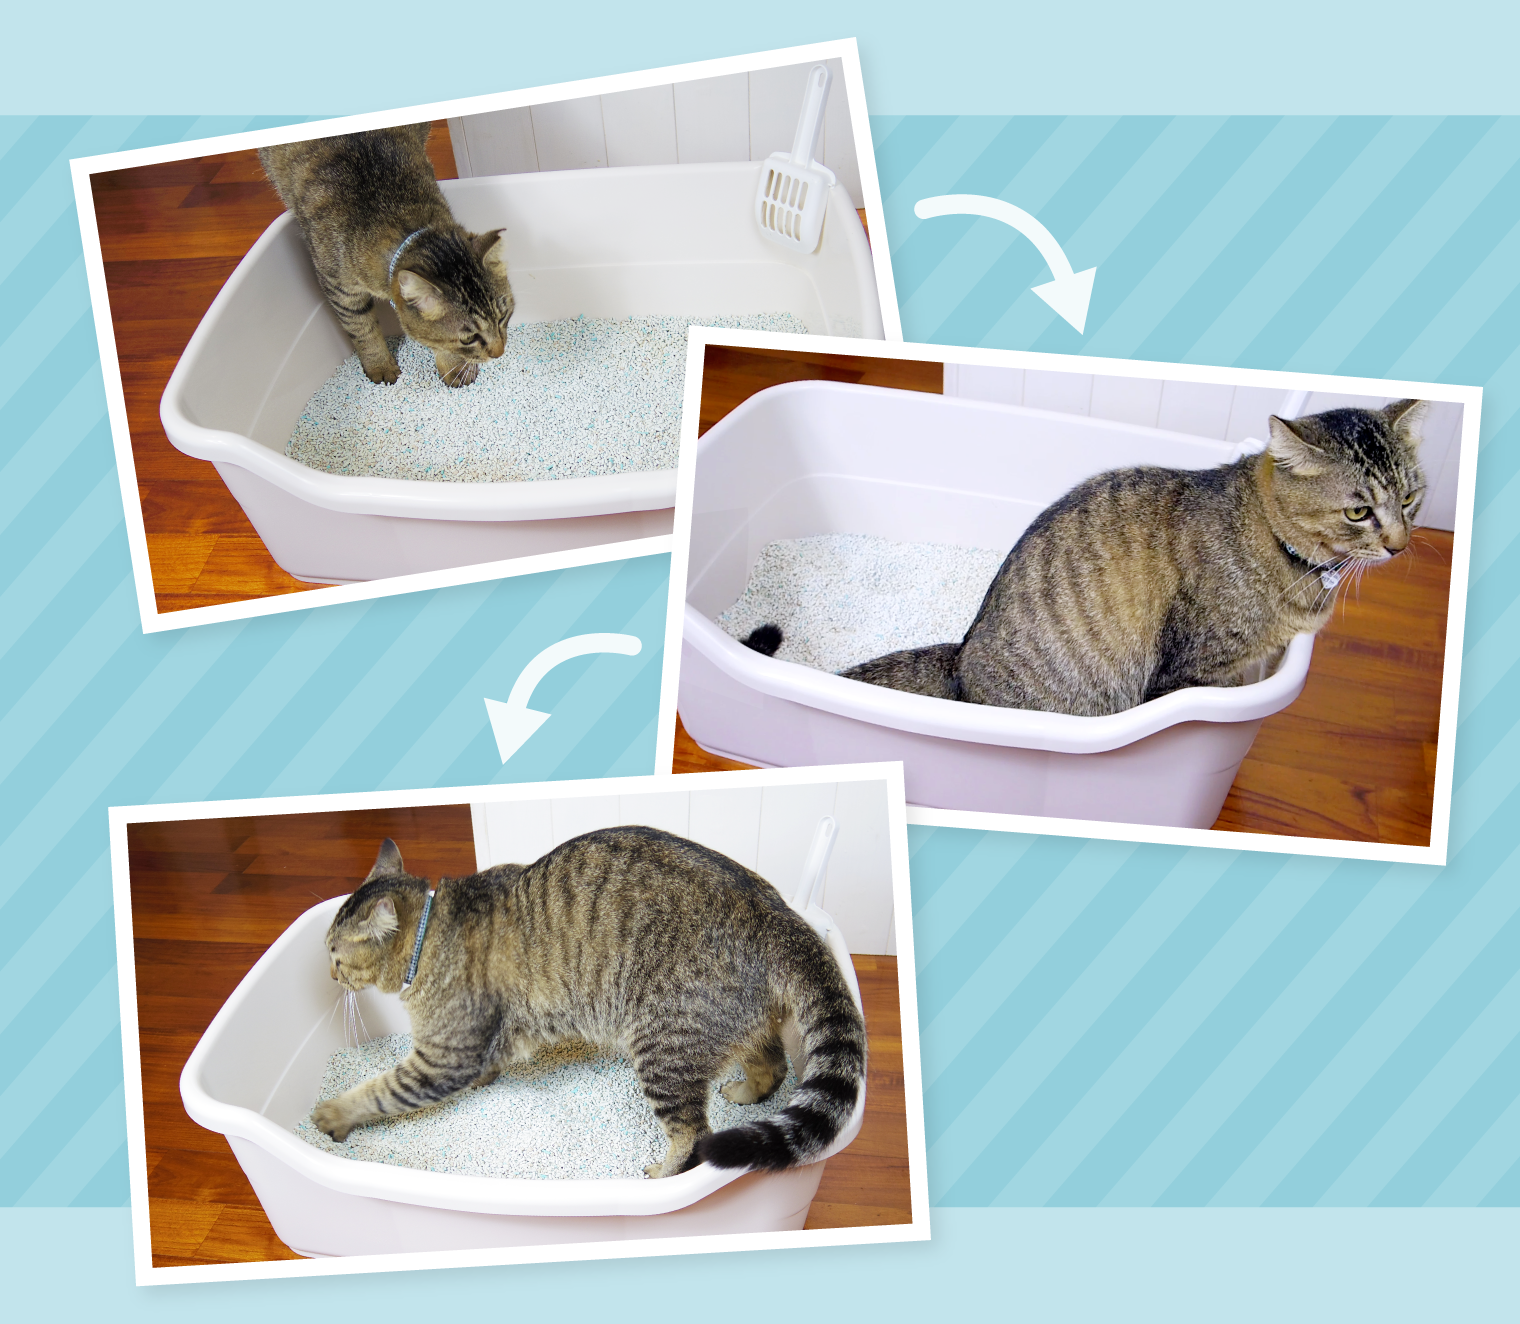 19619円 最新最全の 猫用トイレ 12kgのペットのための猫のゴミ箱の完全に囲まれたペットの鍋の子犬のトイレ防止子猫のベッドパン 猫のトイレ